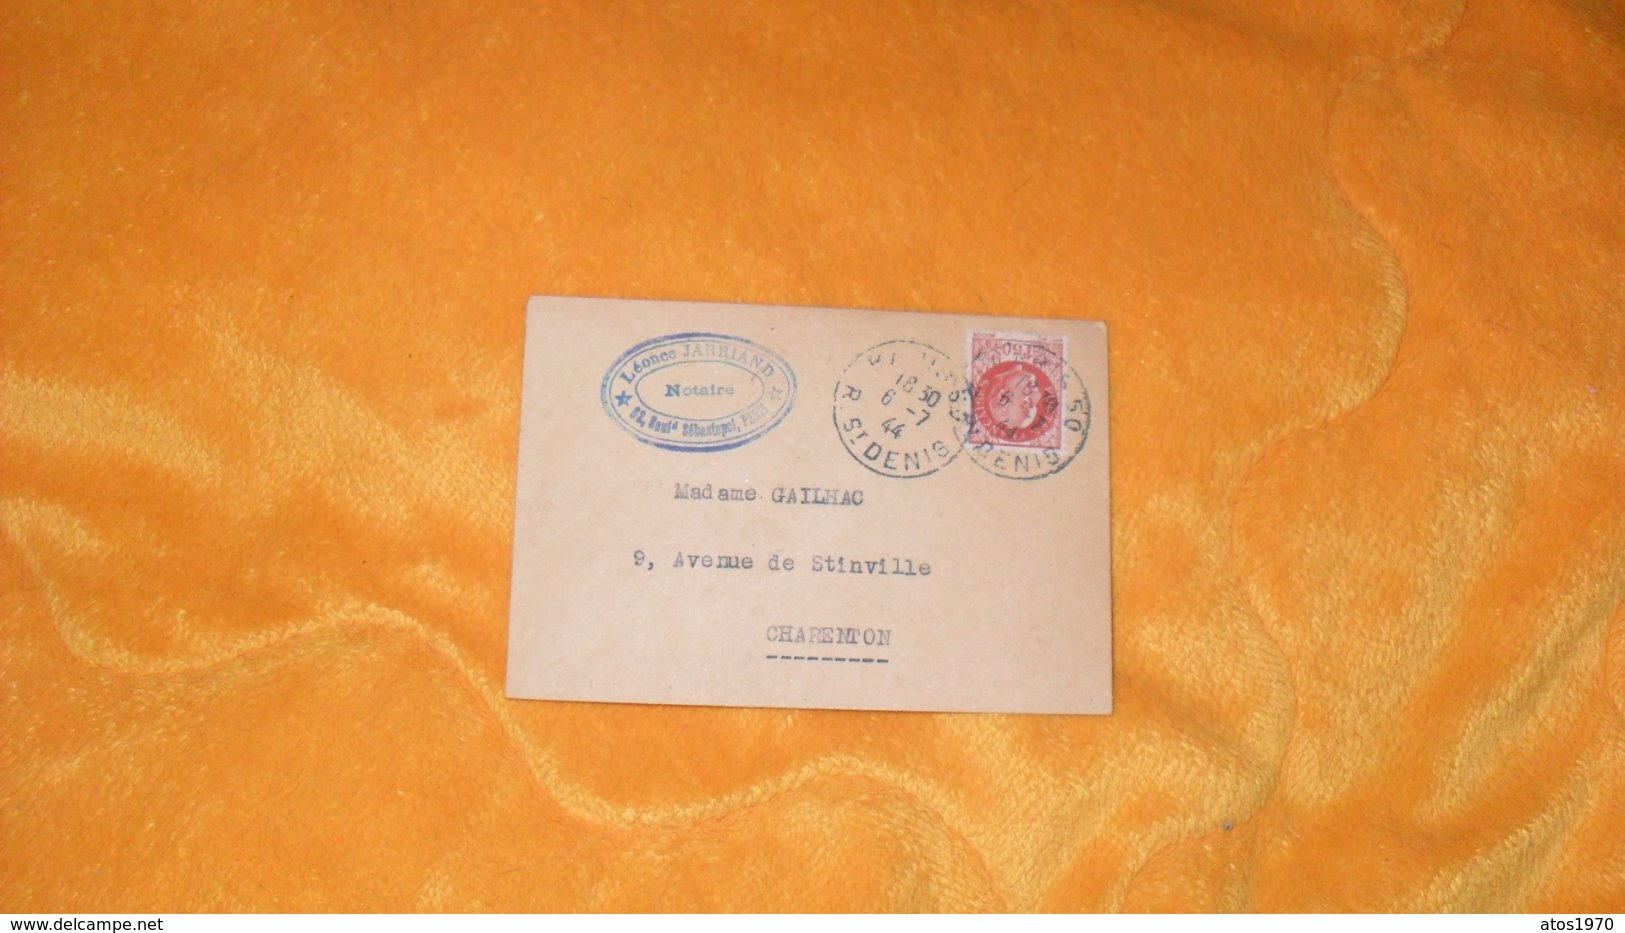 PETITE ENVELOPPE ANCIENNE DE 1944.../ LEONCE JARRIAND NOTAIRE PARIS POUR CHARENTON..CACHETS + TIMBRE - 1921-1960: Période Moderne